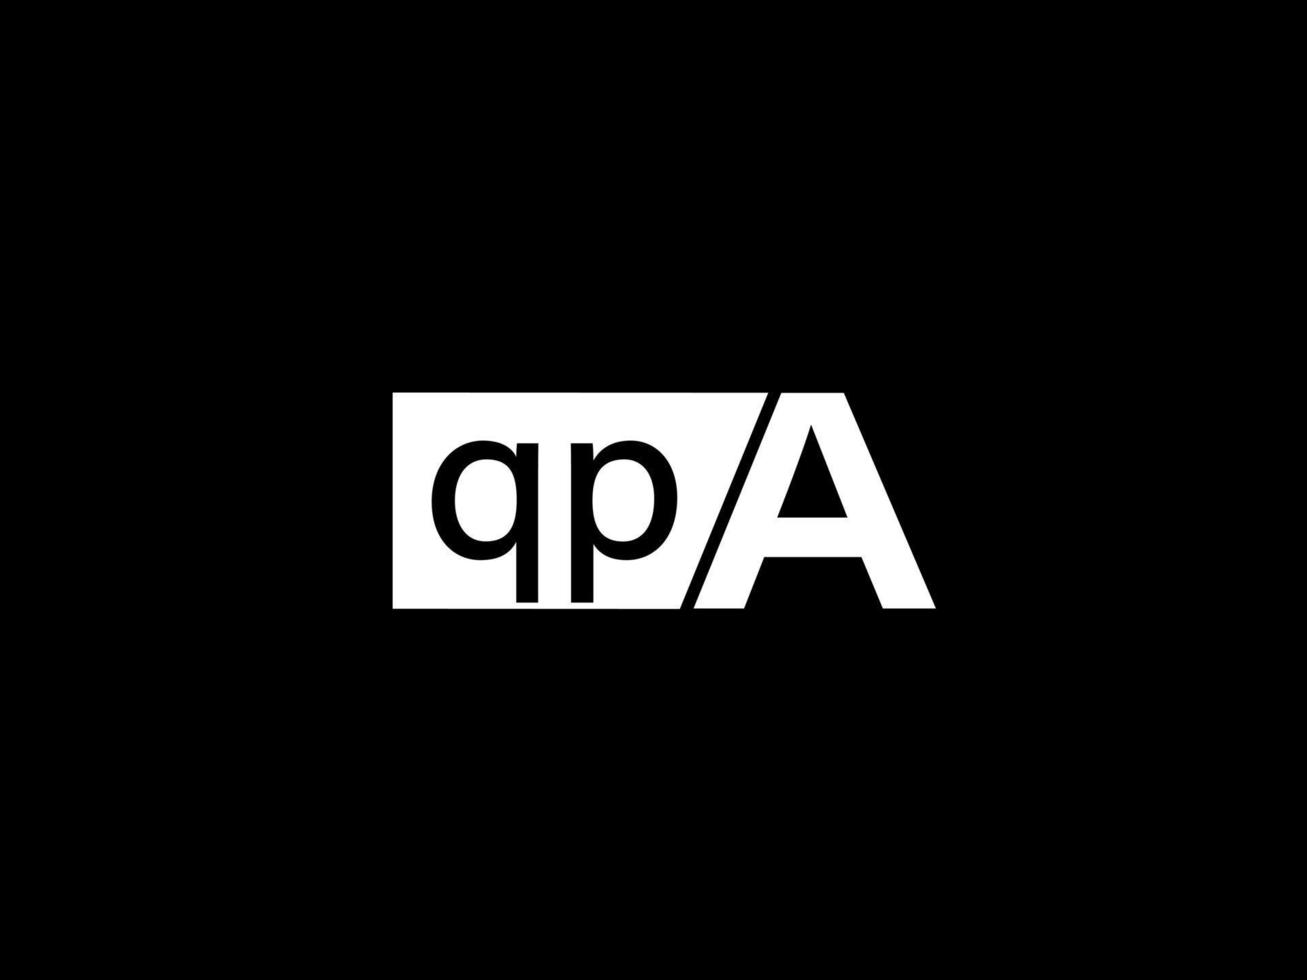 qpa logotyp och grafik design vektor konst, ikoner isolerat på svart bakgrund